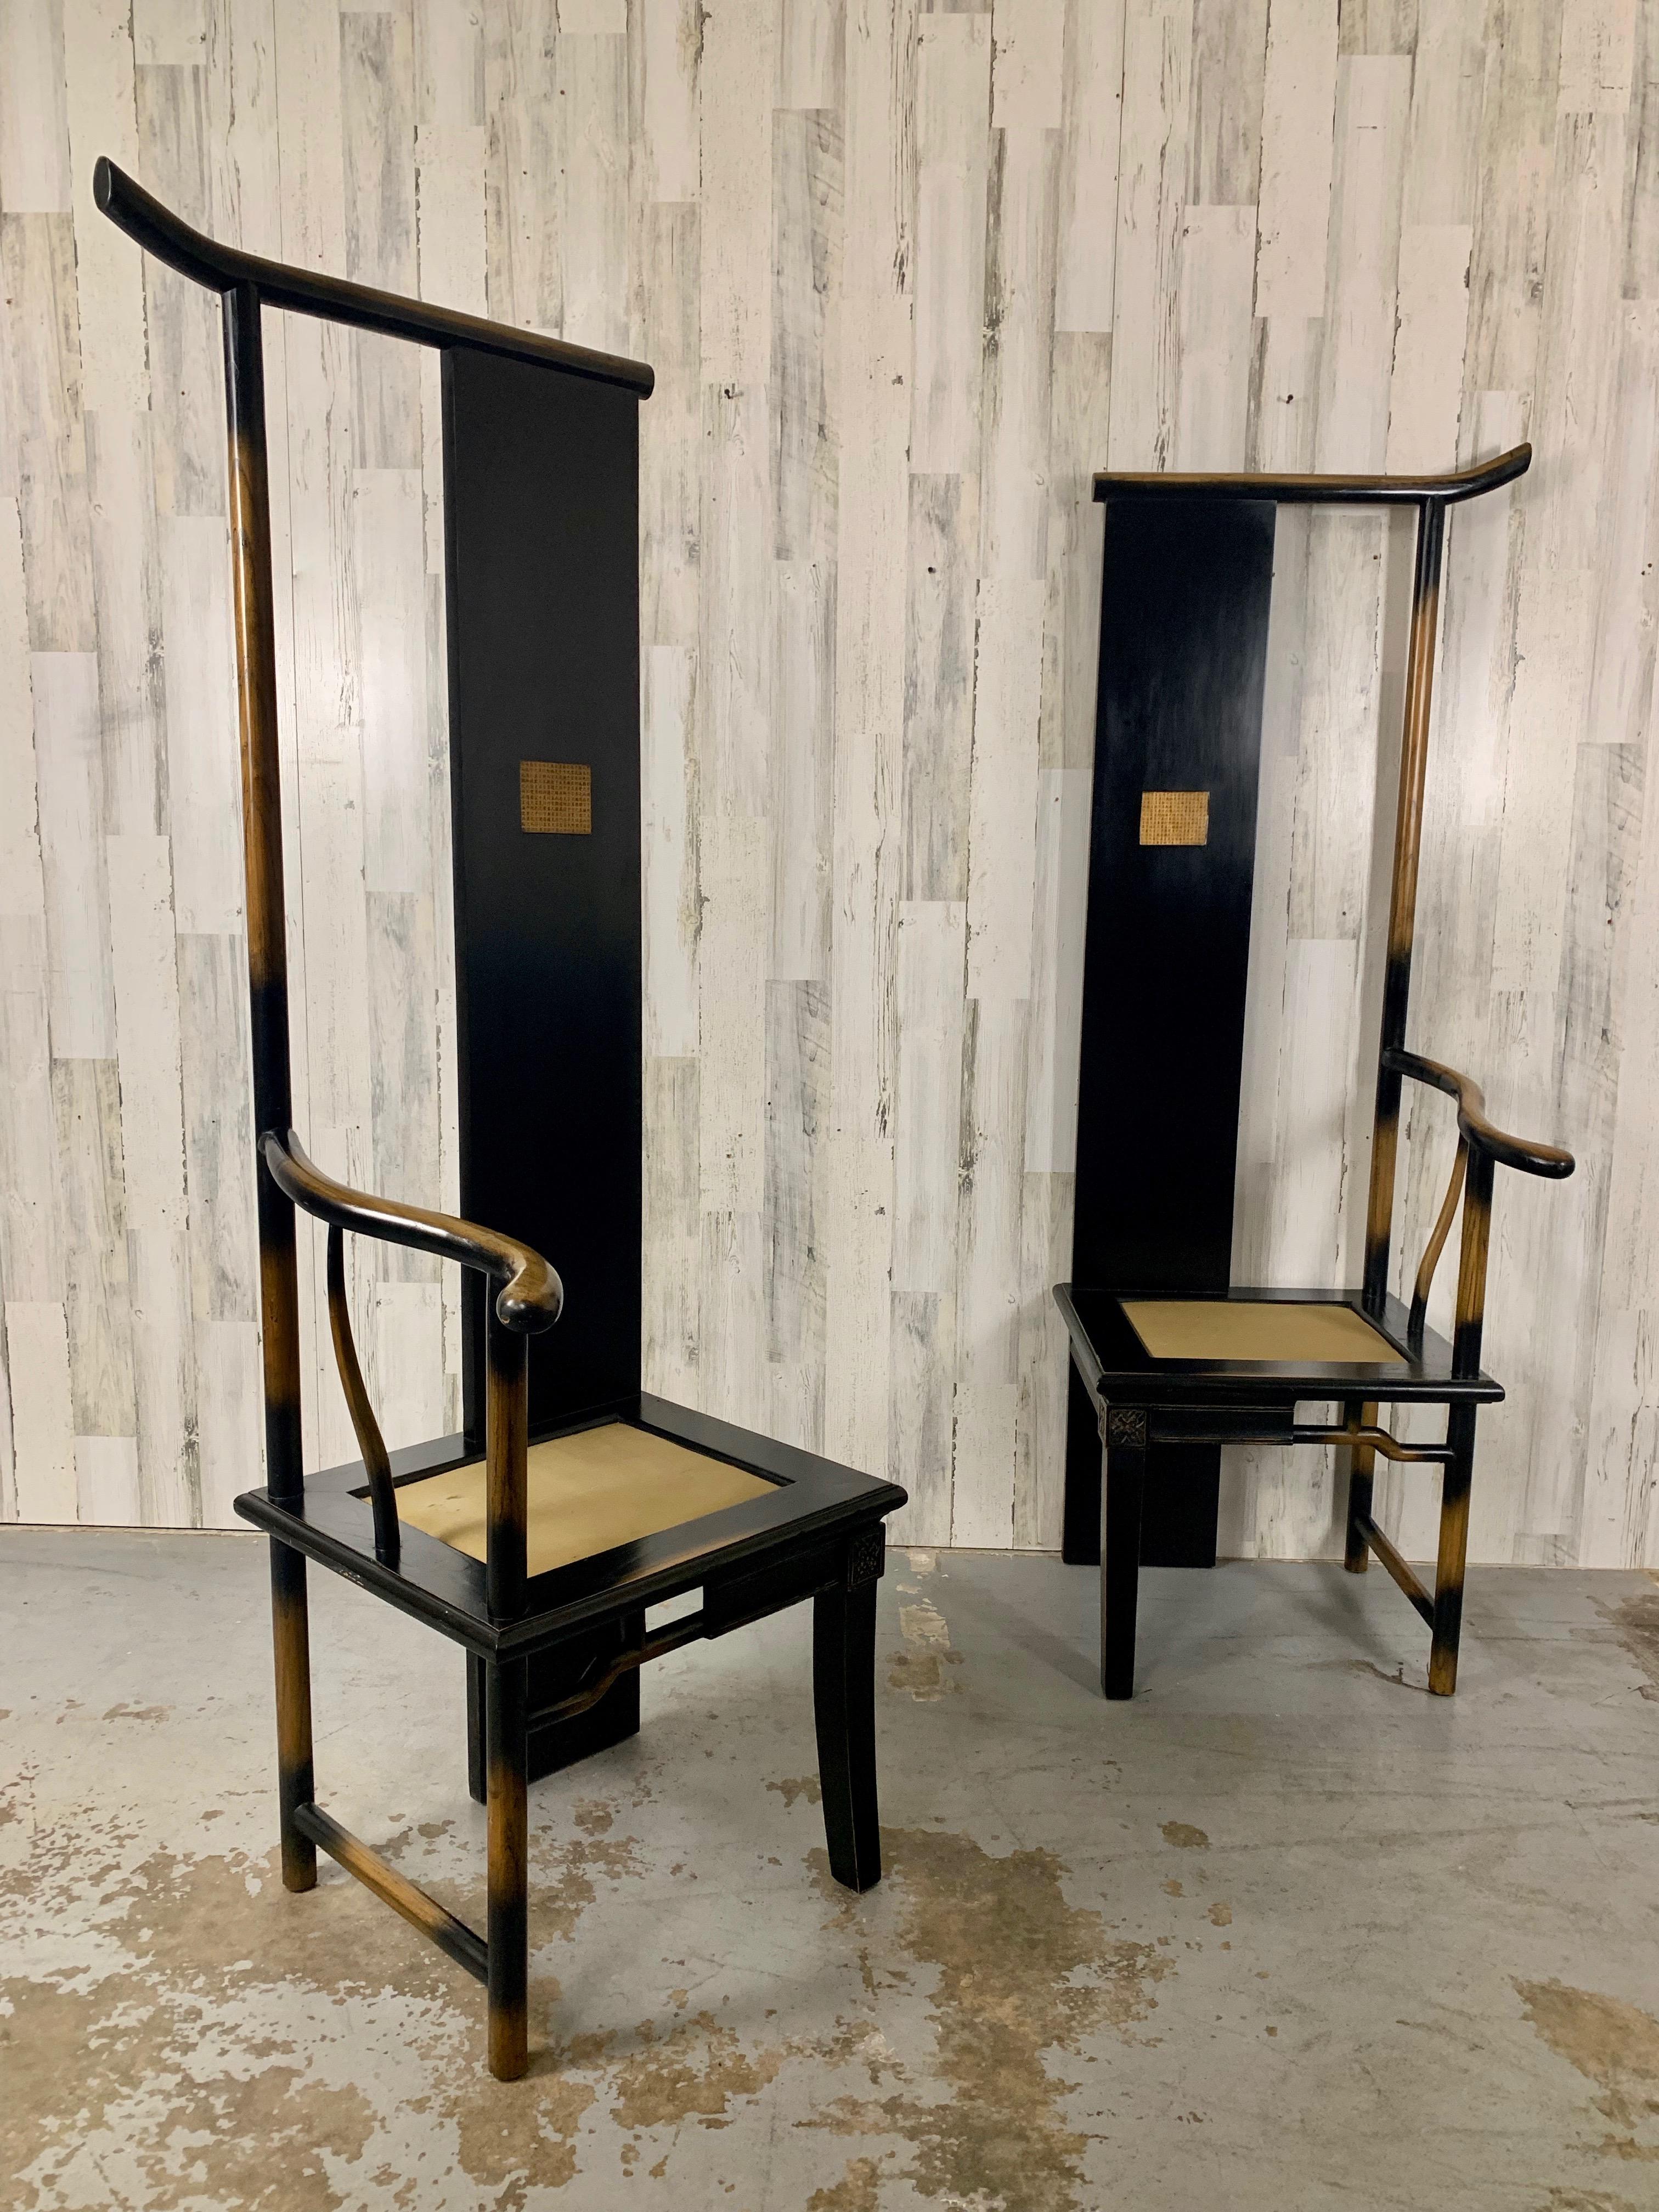  Combinaison de deux fauteuils à un seul bras exécutés en 1996 par Shao Fan. Fabriqué en catalpa et en bois d'orme. Il a conçu des meubles qui représentent l'art plutôt que d'être purement fonctionnels. Chaque chaise qu'il a conçue est une œuvre